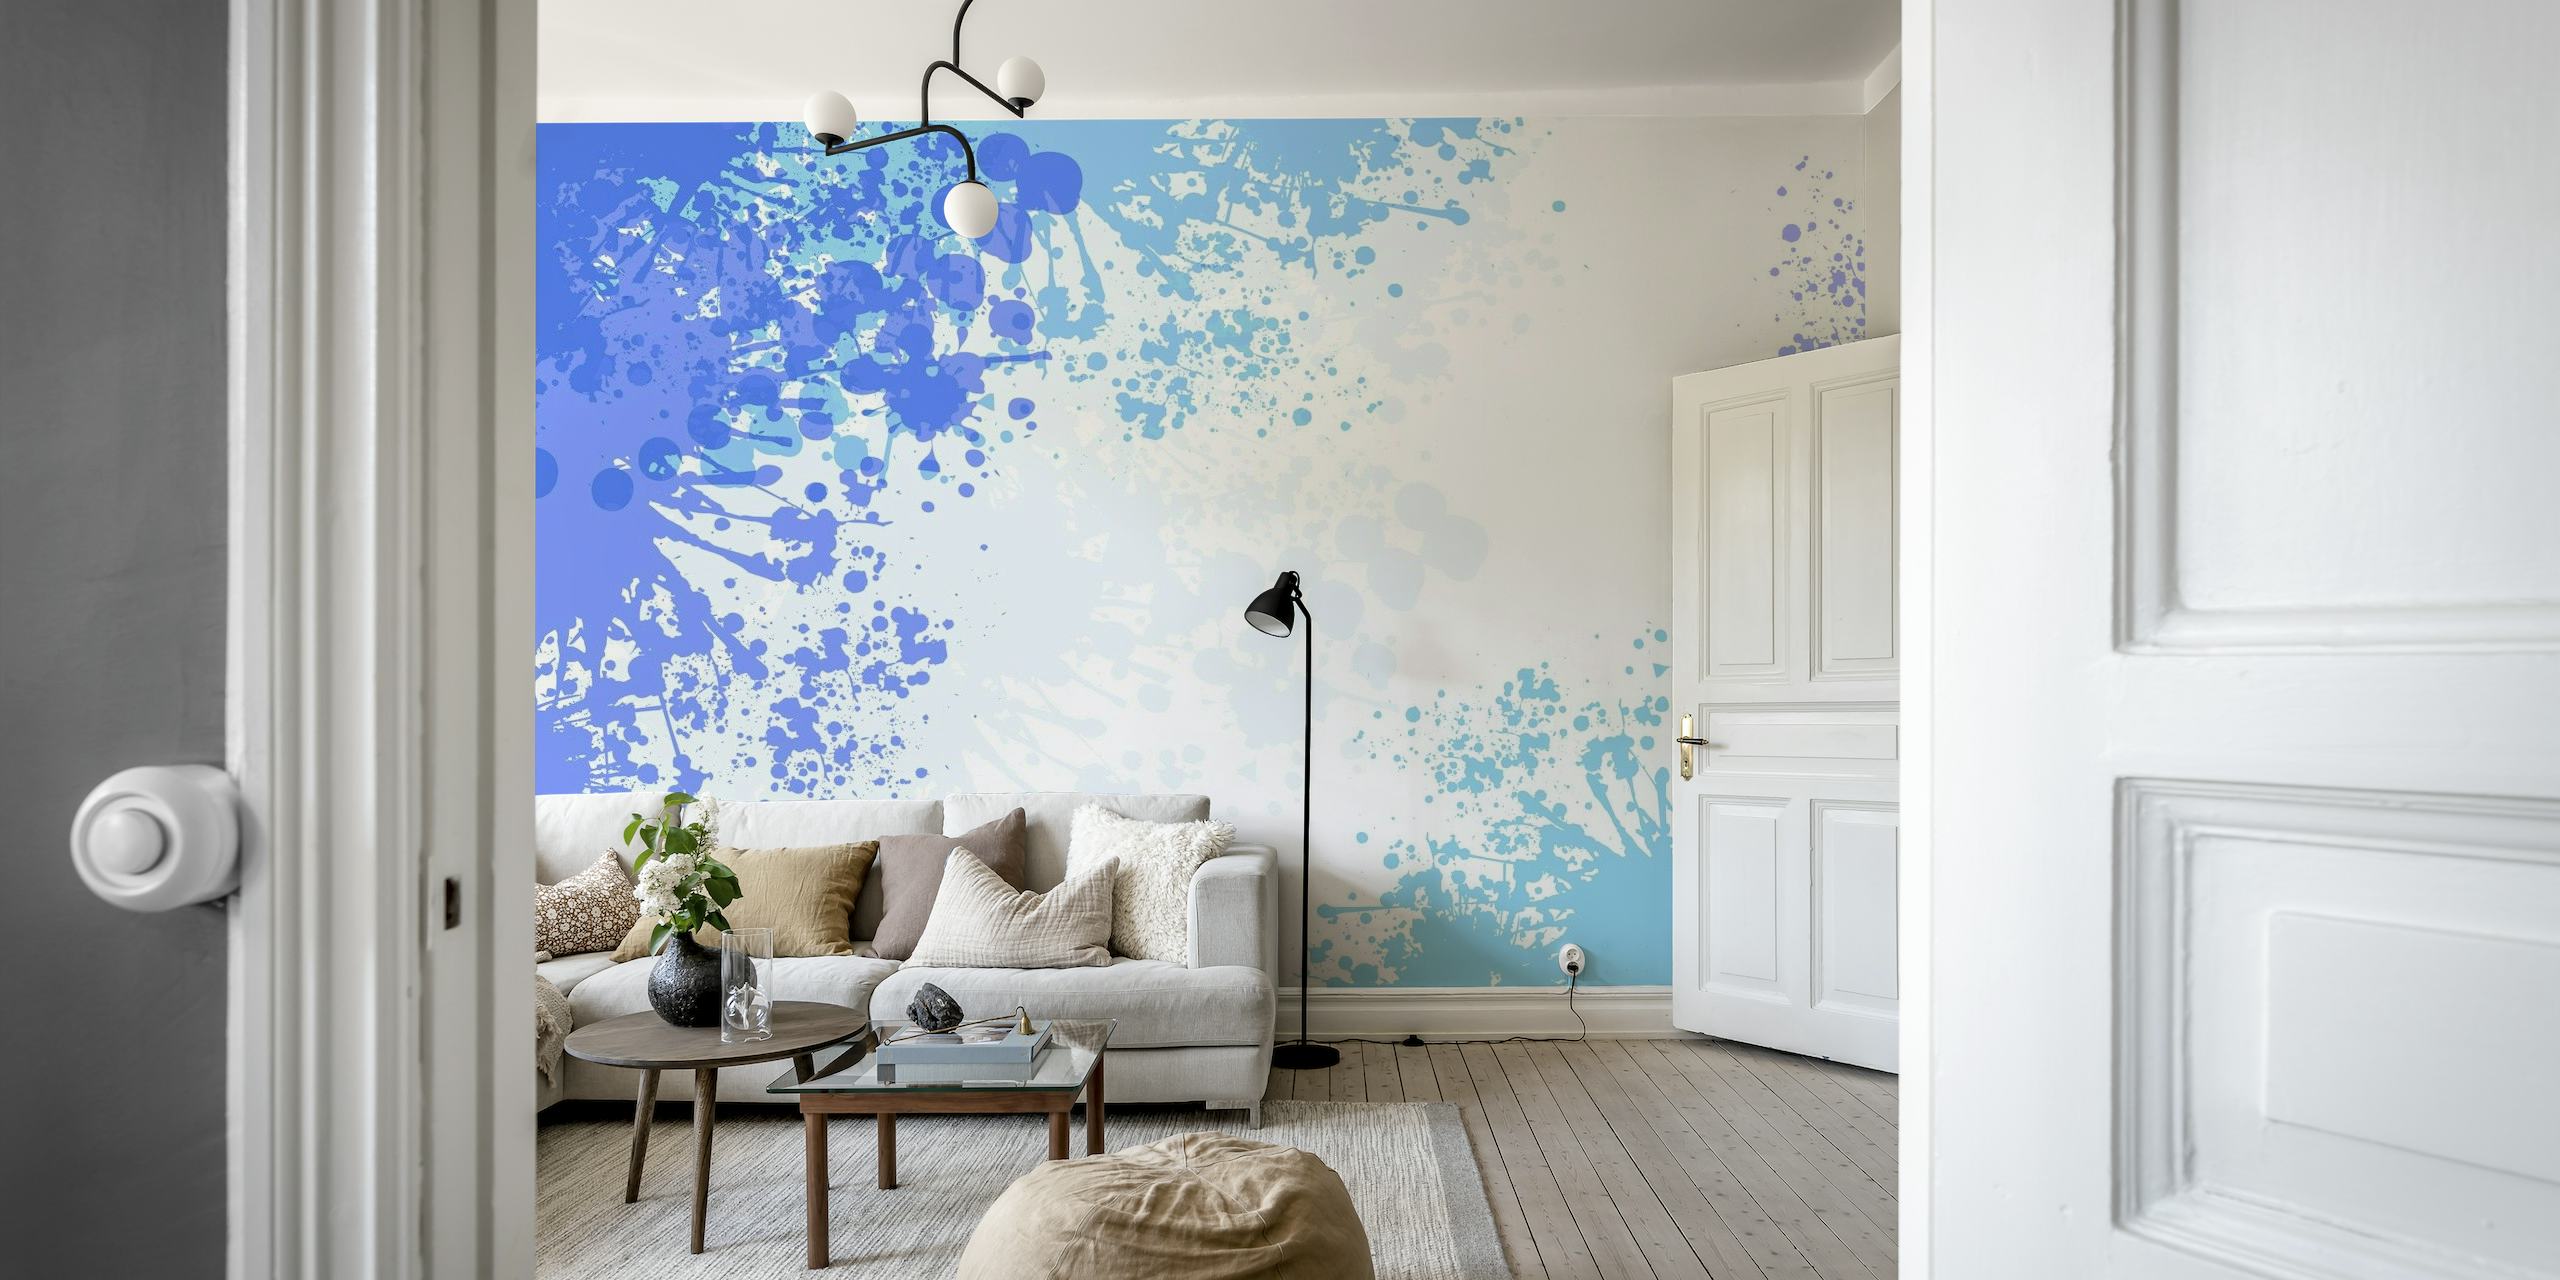 Abstrakt lyseblå splash art vægmaleri med en blanding af hvide og dybere blå drypper på en væg.